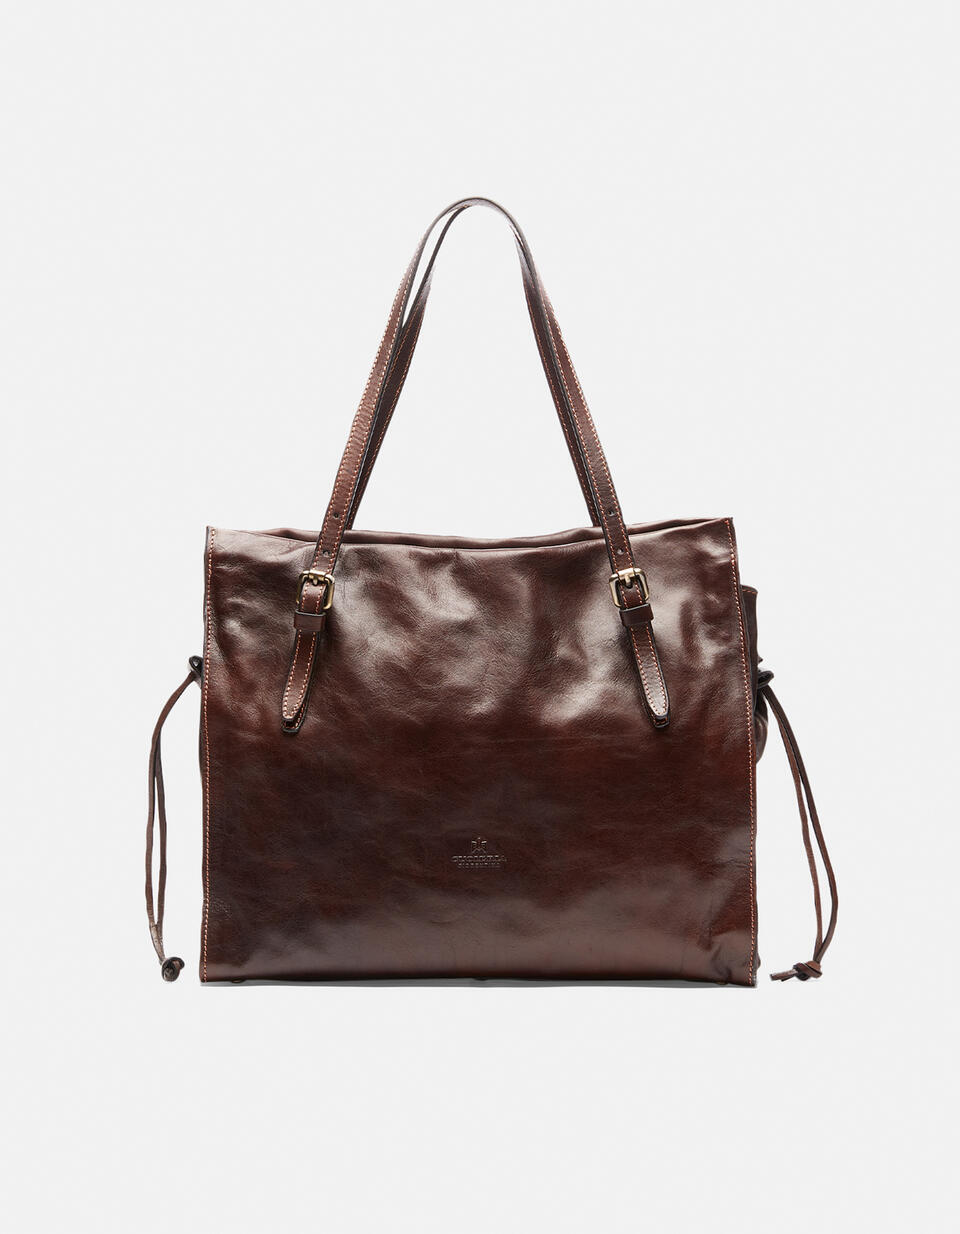 Large shopping bag - SHOPPING - WOMEN'S BAGS | bags TESTA DI MORO - SHOPPING - WOMEN'S BAGS | bagsCuoieria Fiorentina